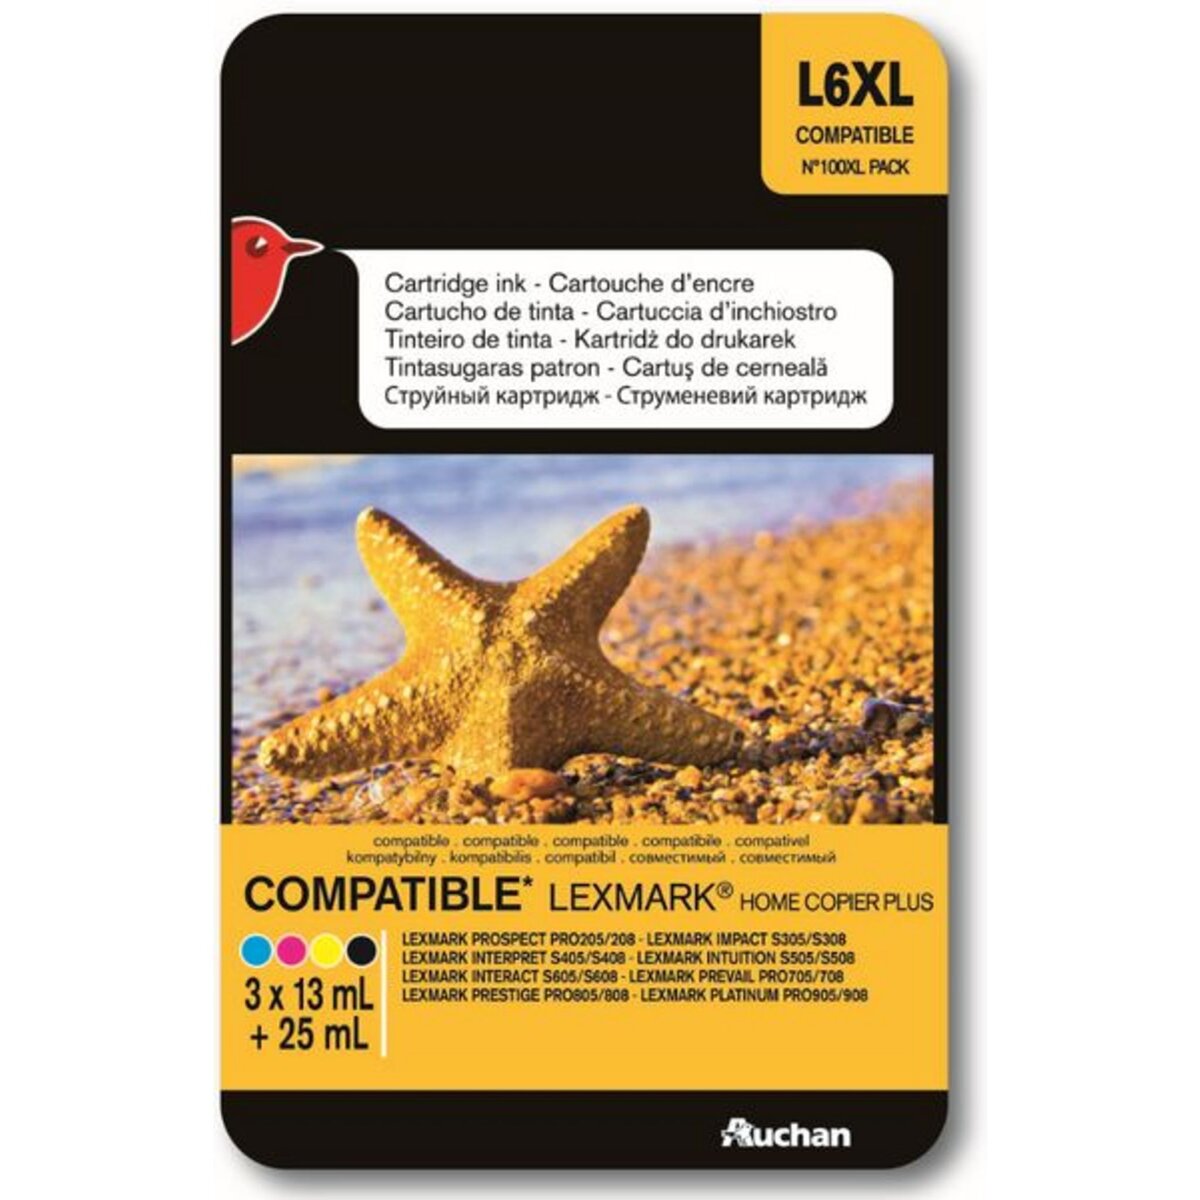 AUCHAN Cartouche compatible Lexmark 100xl pack - Noir Cyan Magenta & Jaune